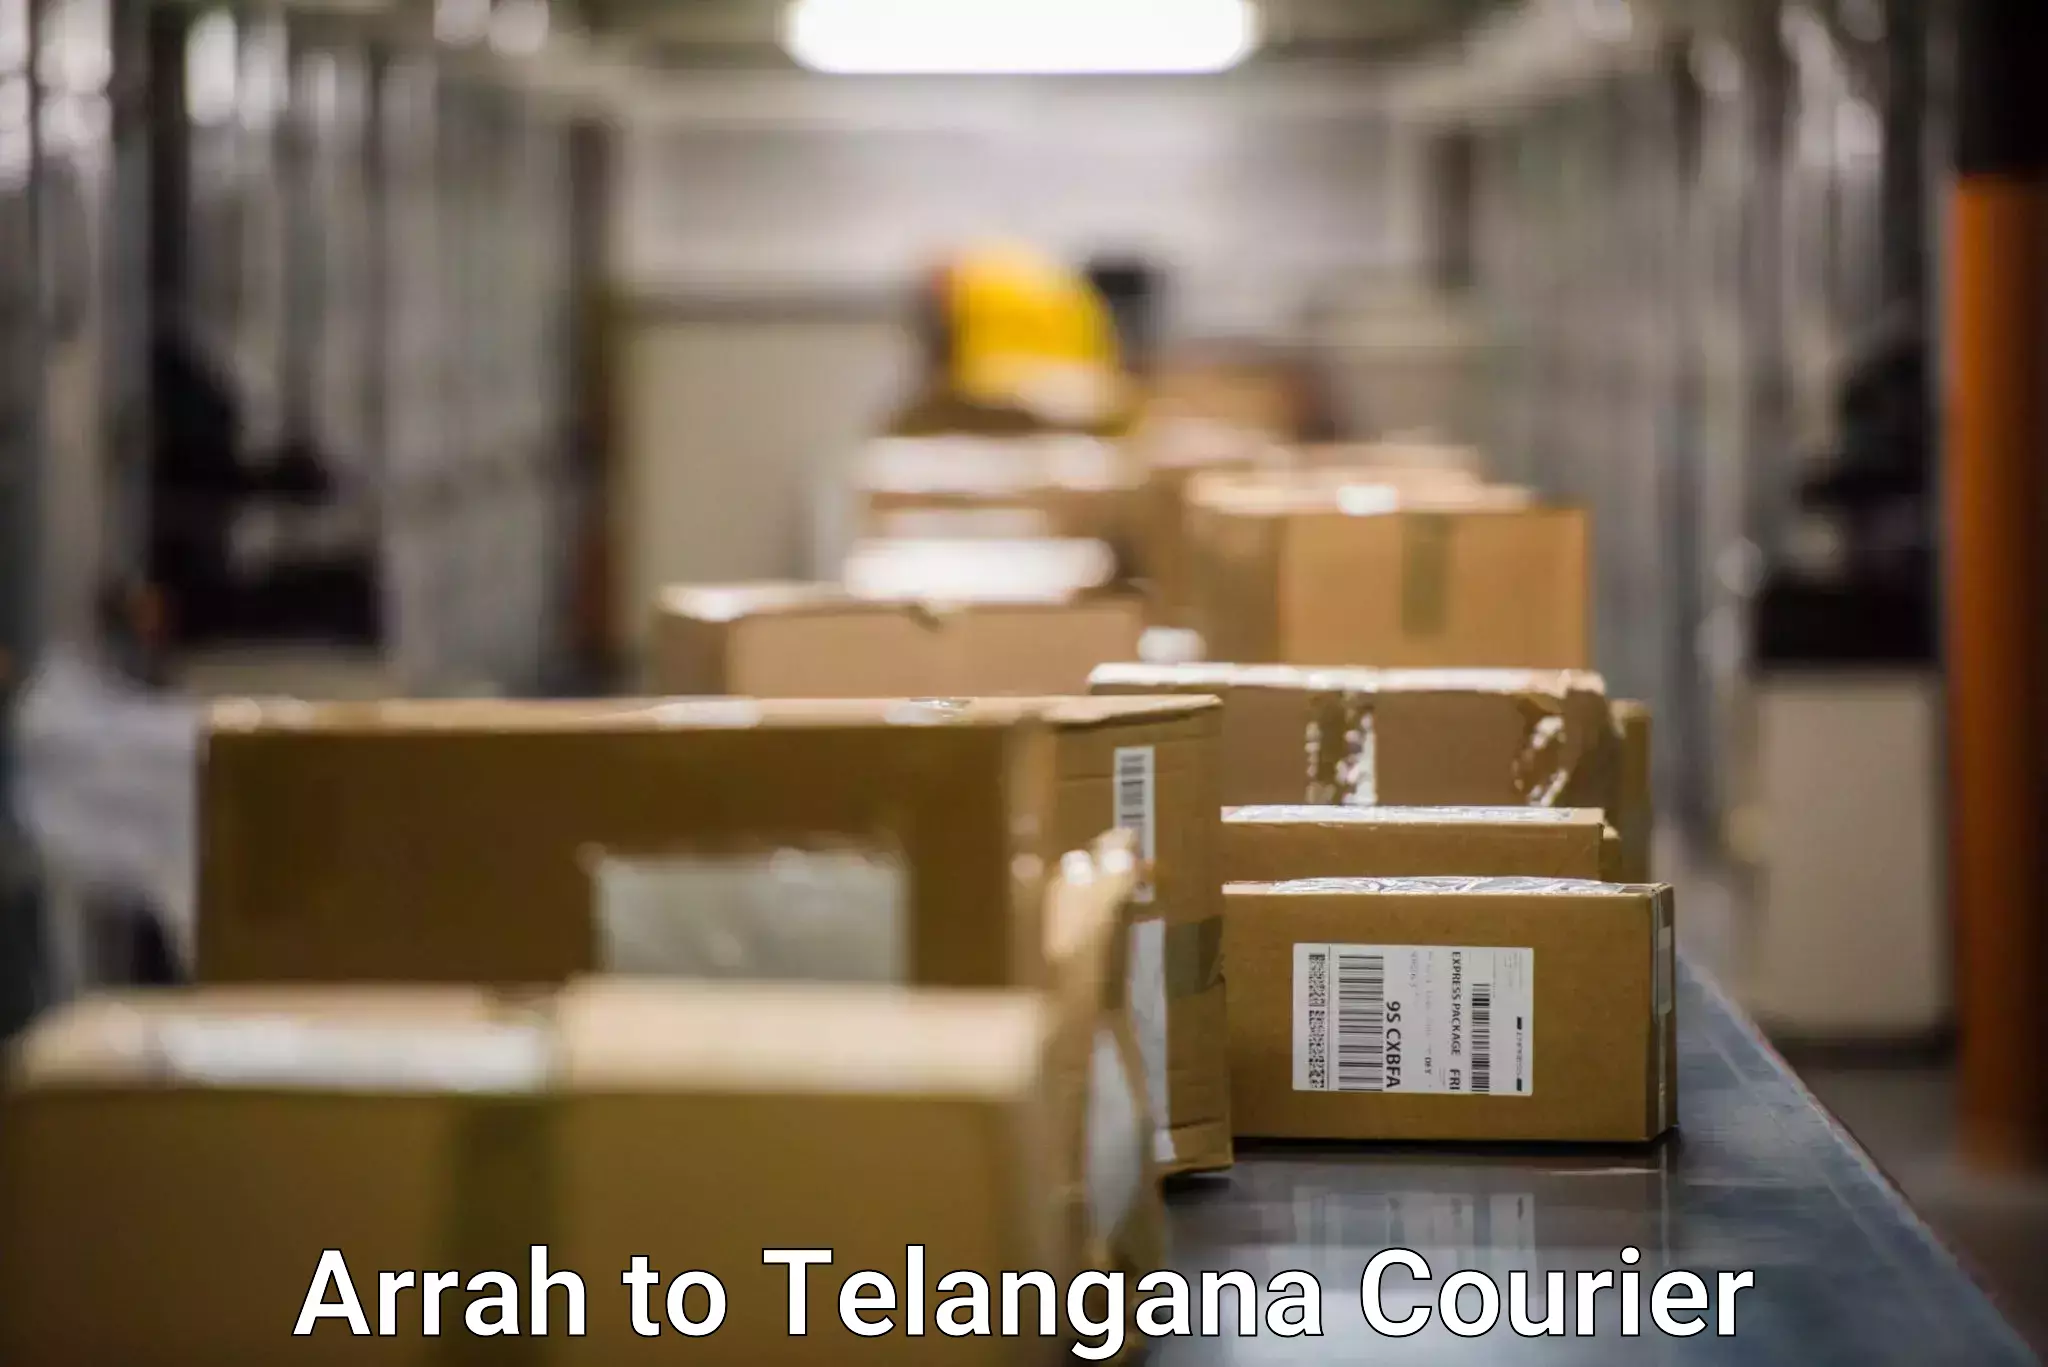 Express logistics service in Arrah to Telangana